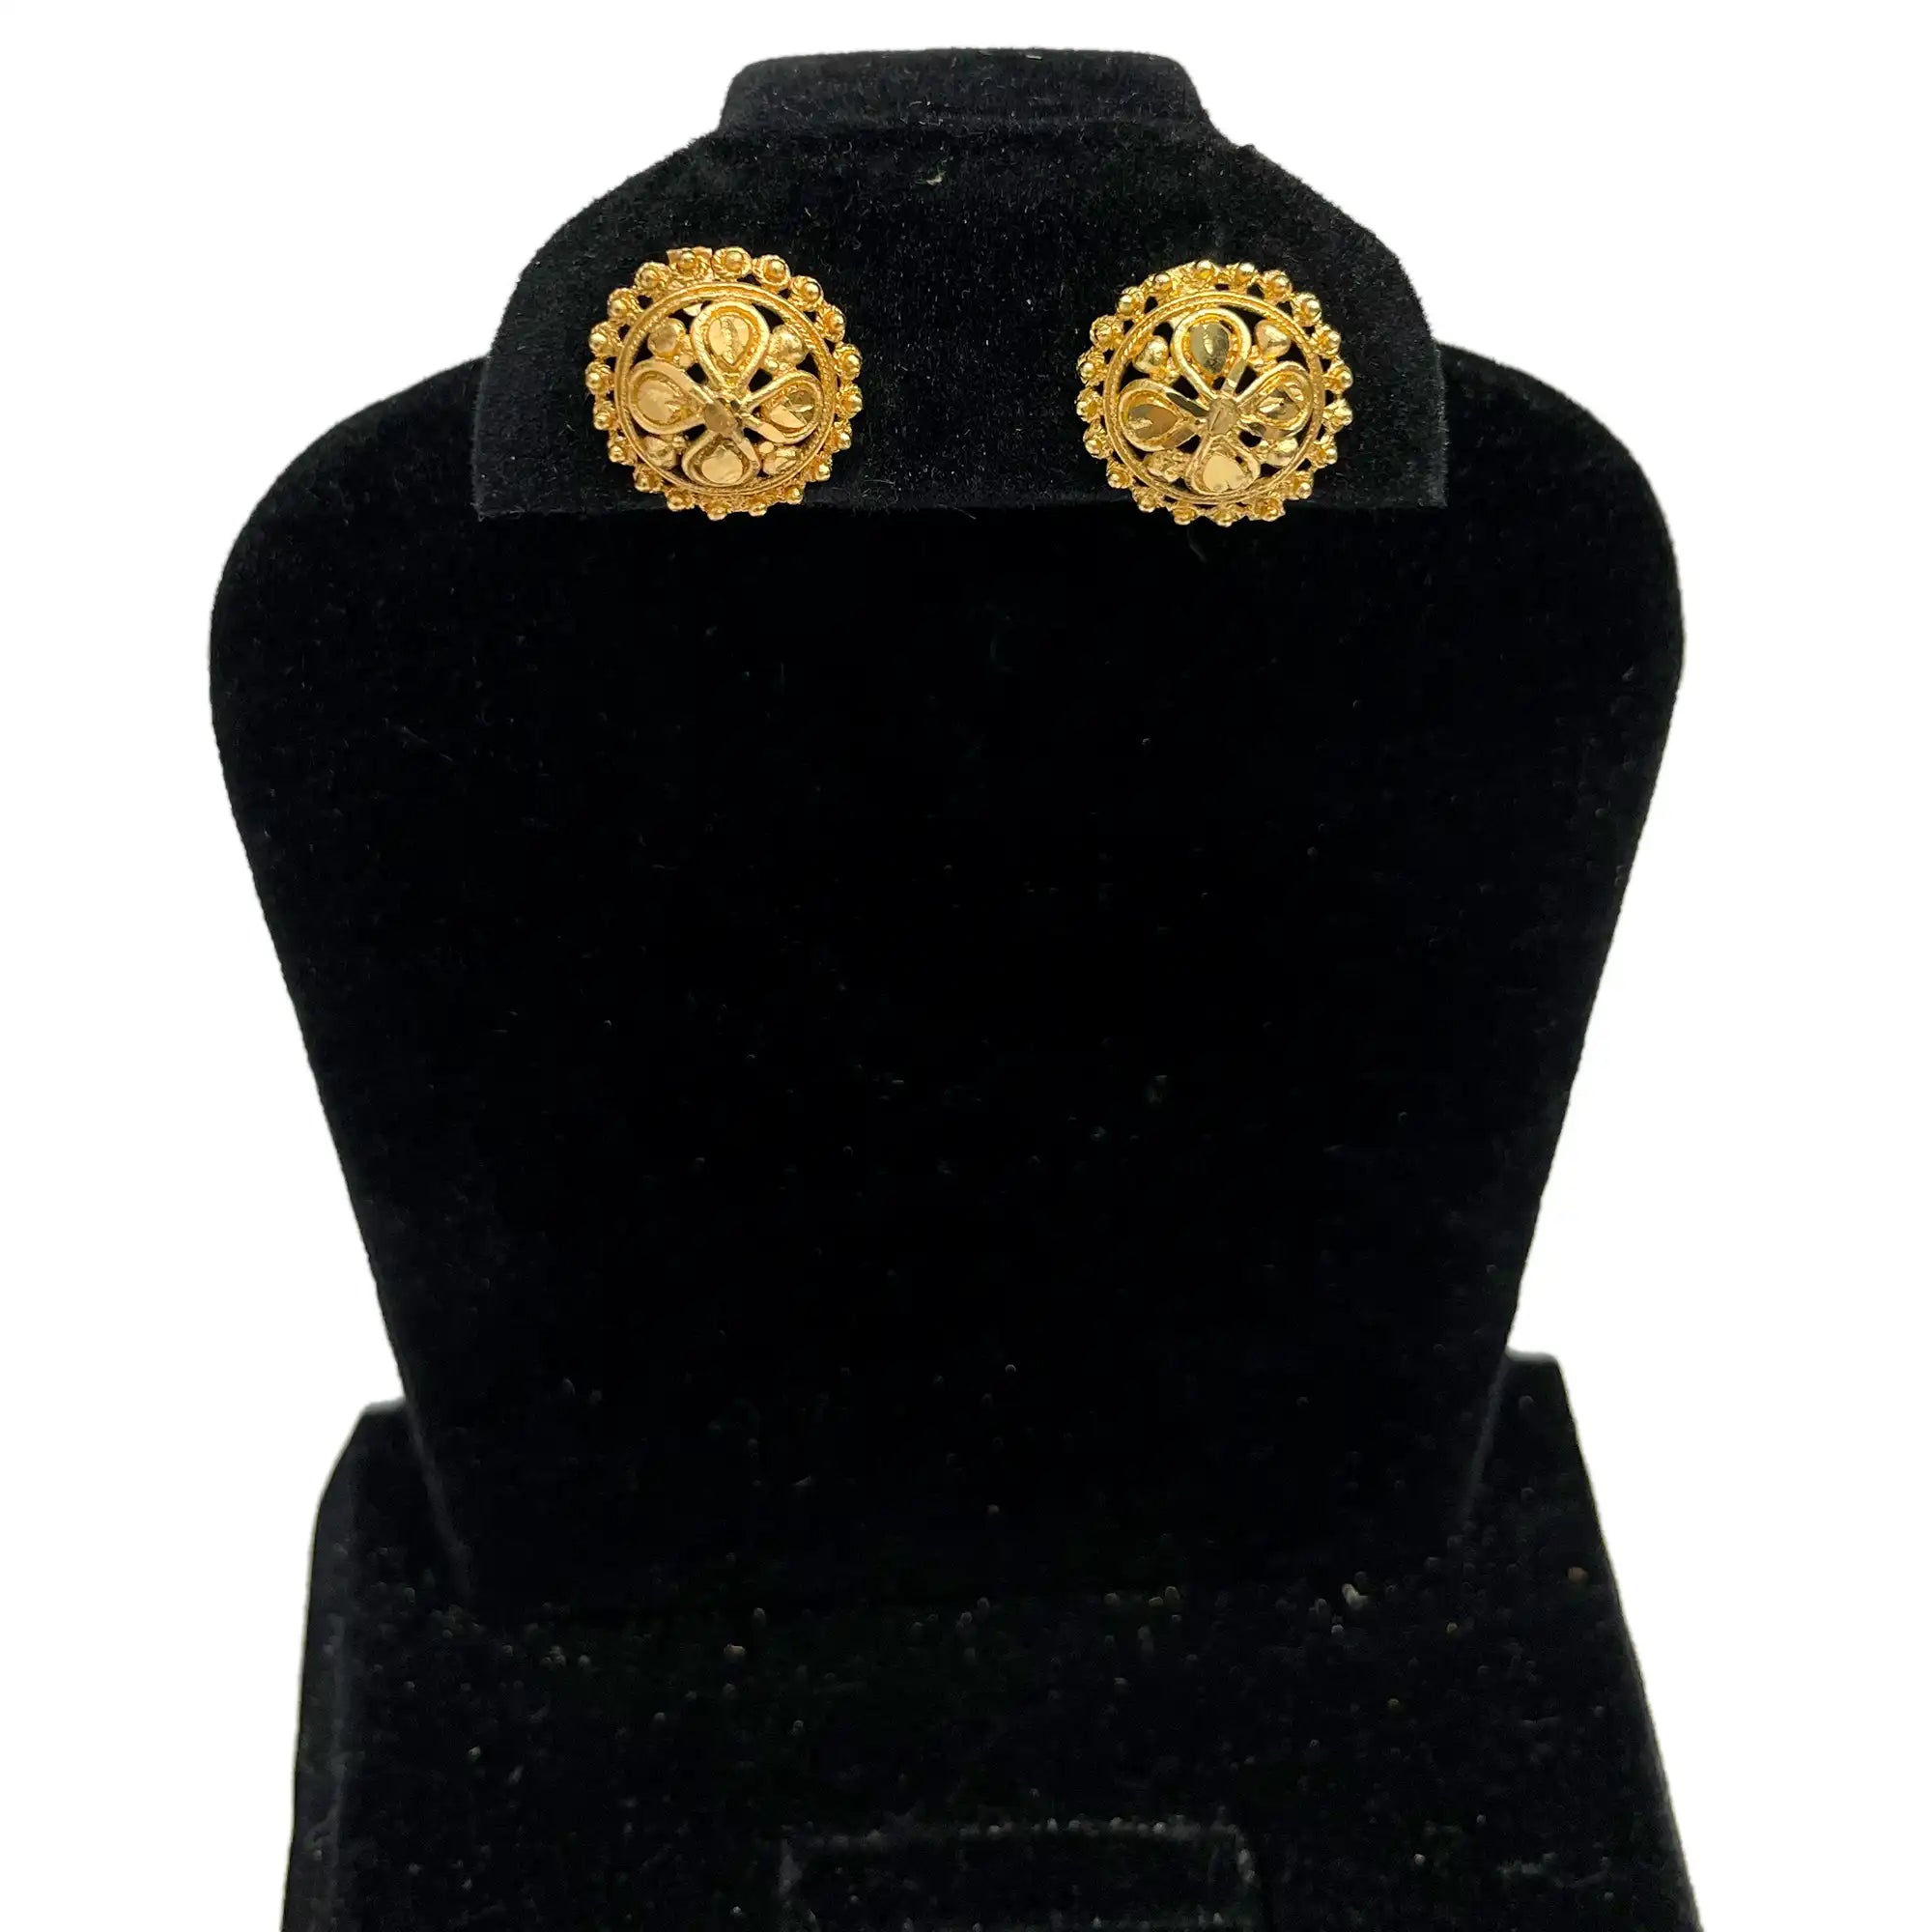 Golden Studded Flower Earrings SE 05